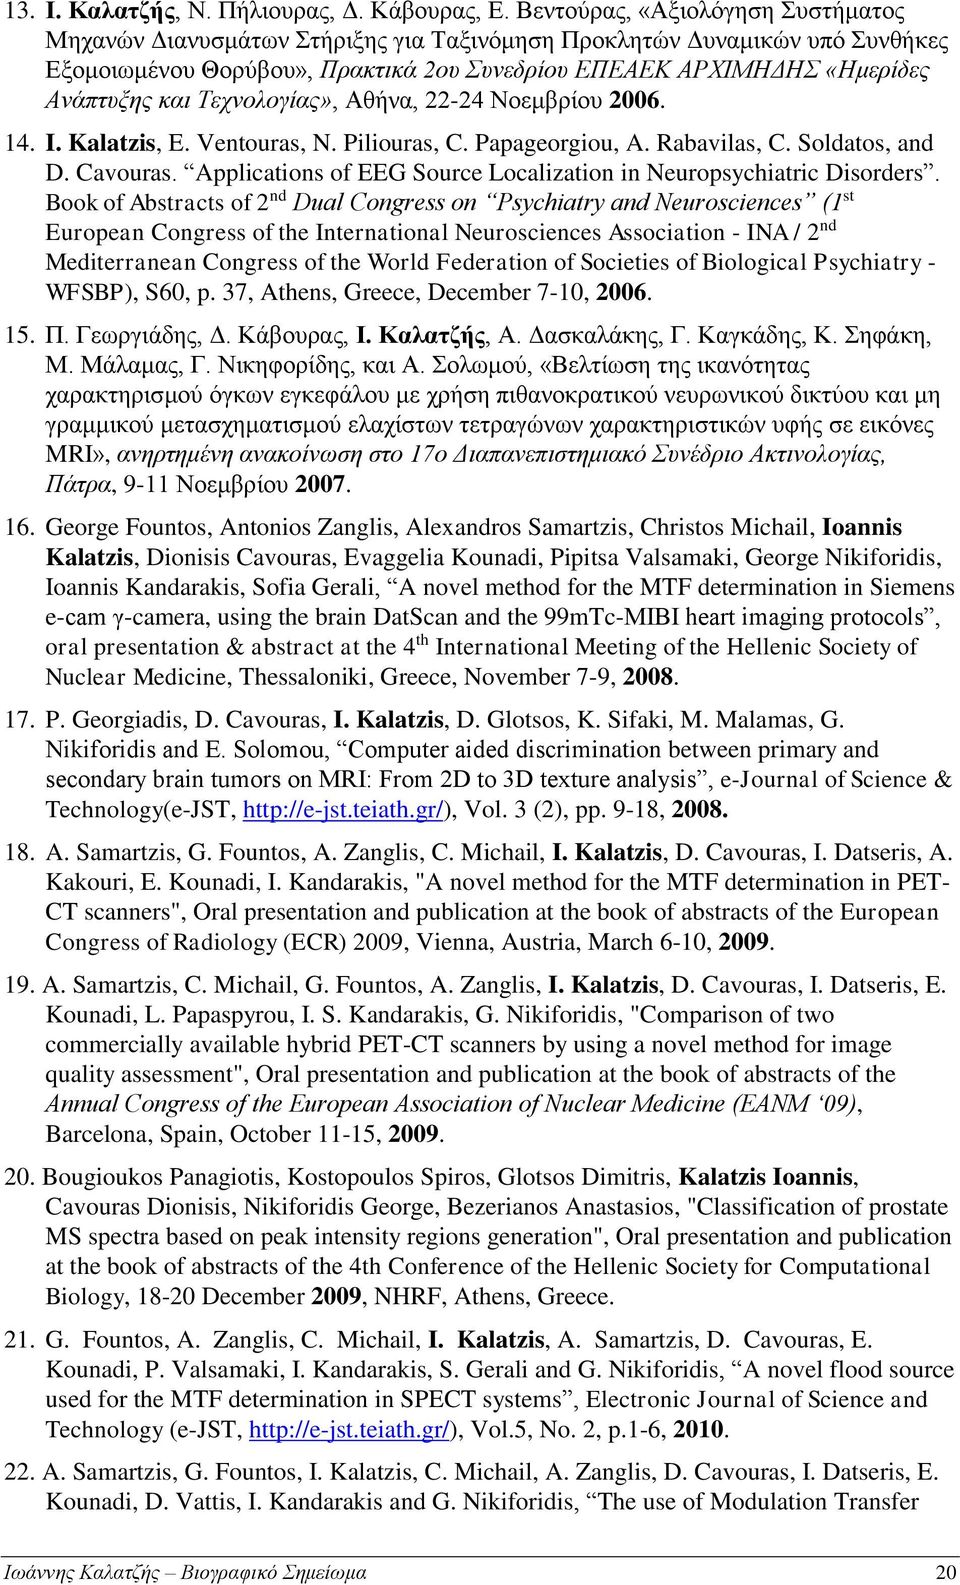 Τεχνολογίας», Αθήνα, 22-24 Νοεμβρίου 2006. 14. I. Kalatzis, E. Ventouras, N. Piliouras, C. Papageorgiou, A. Rabavilas, C. Soldatos, and D. Cavouras.